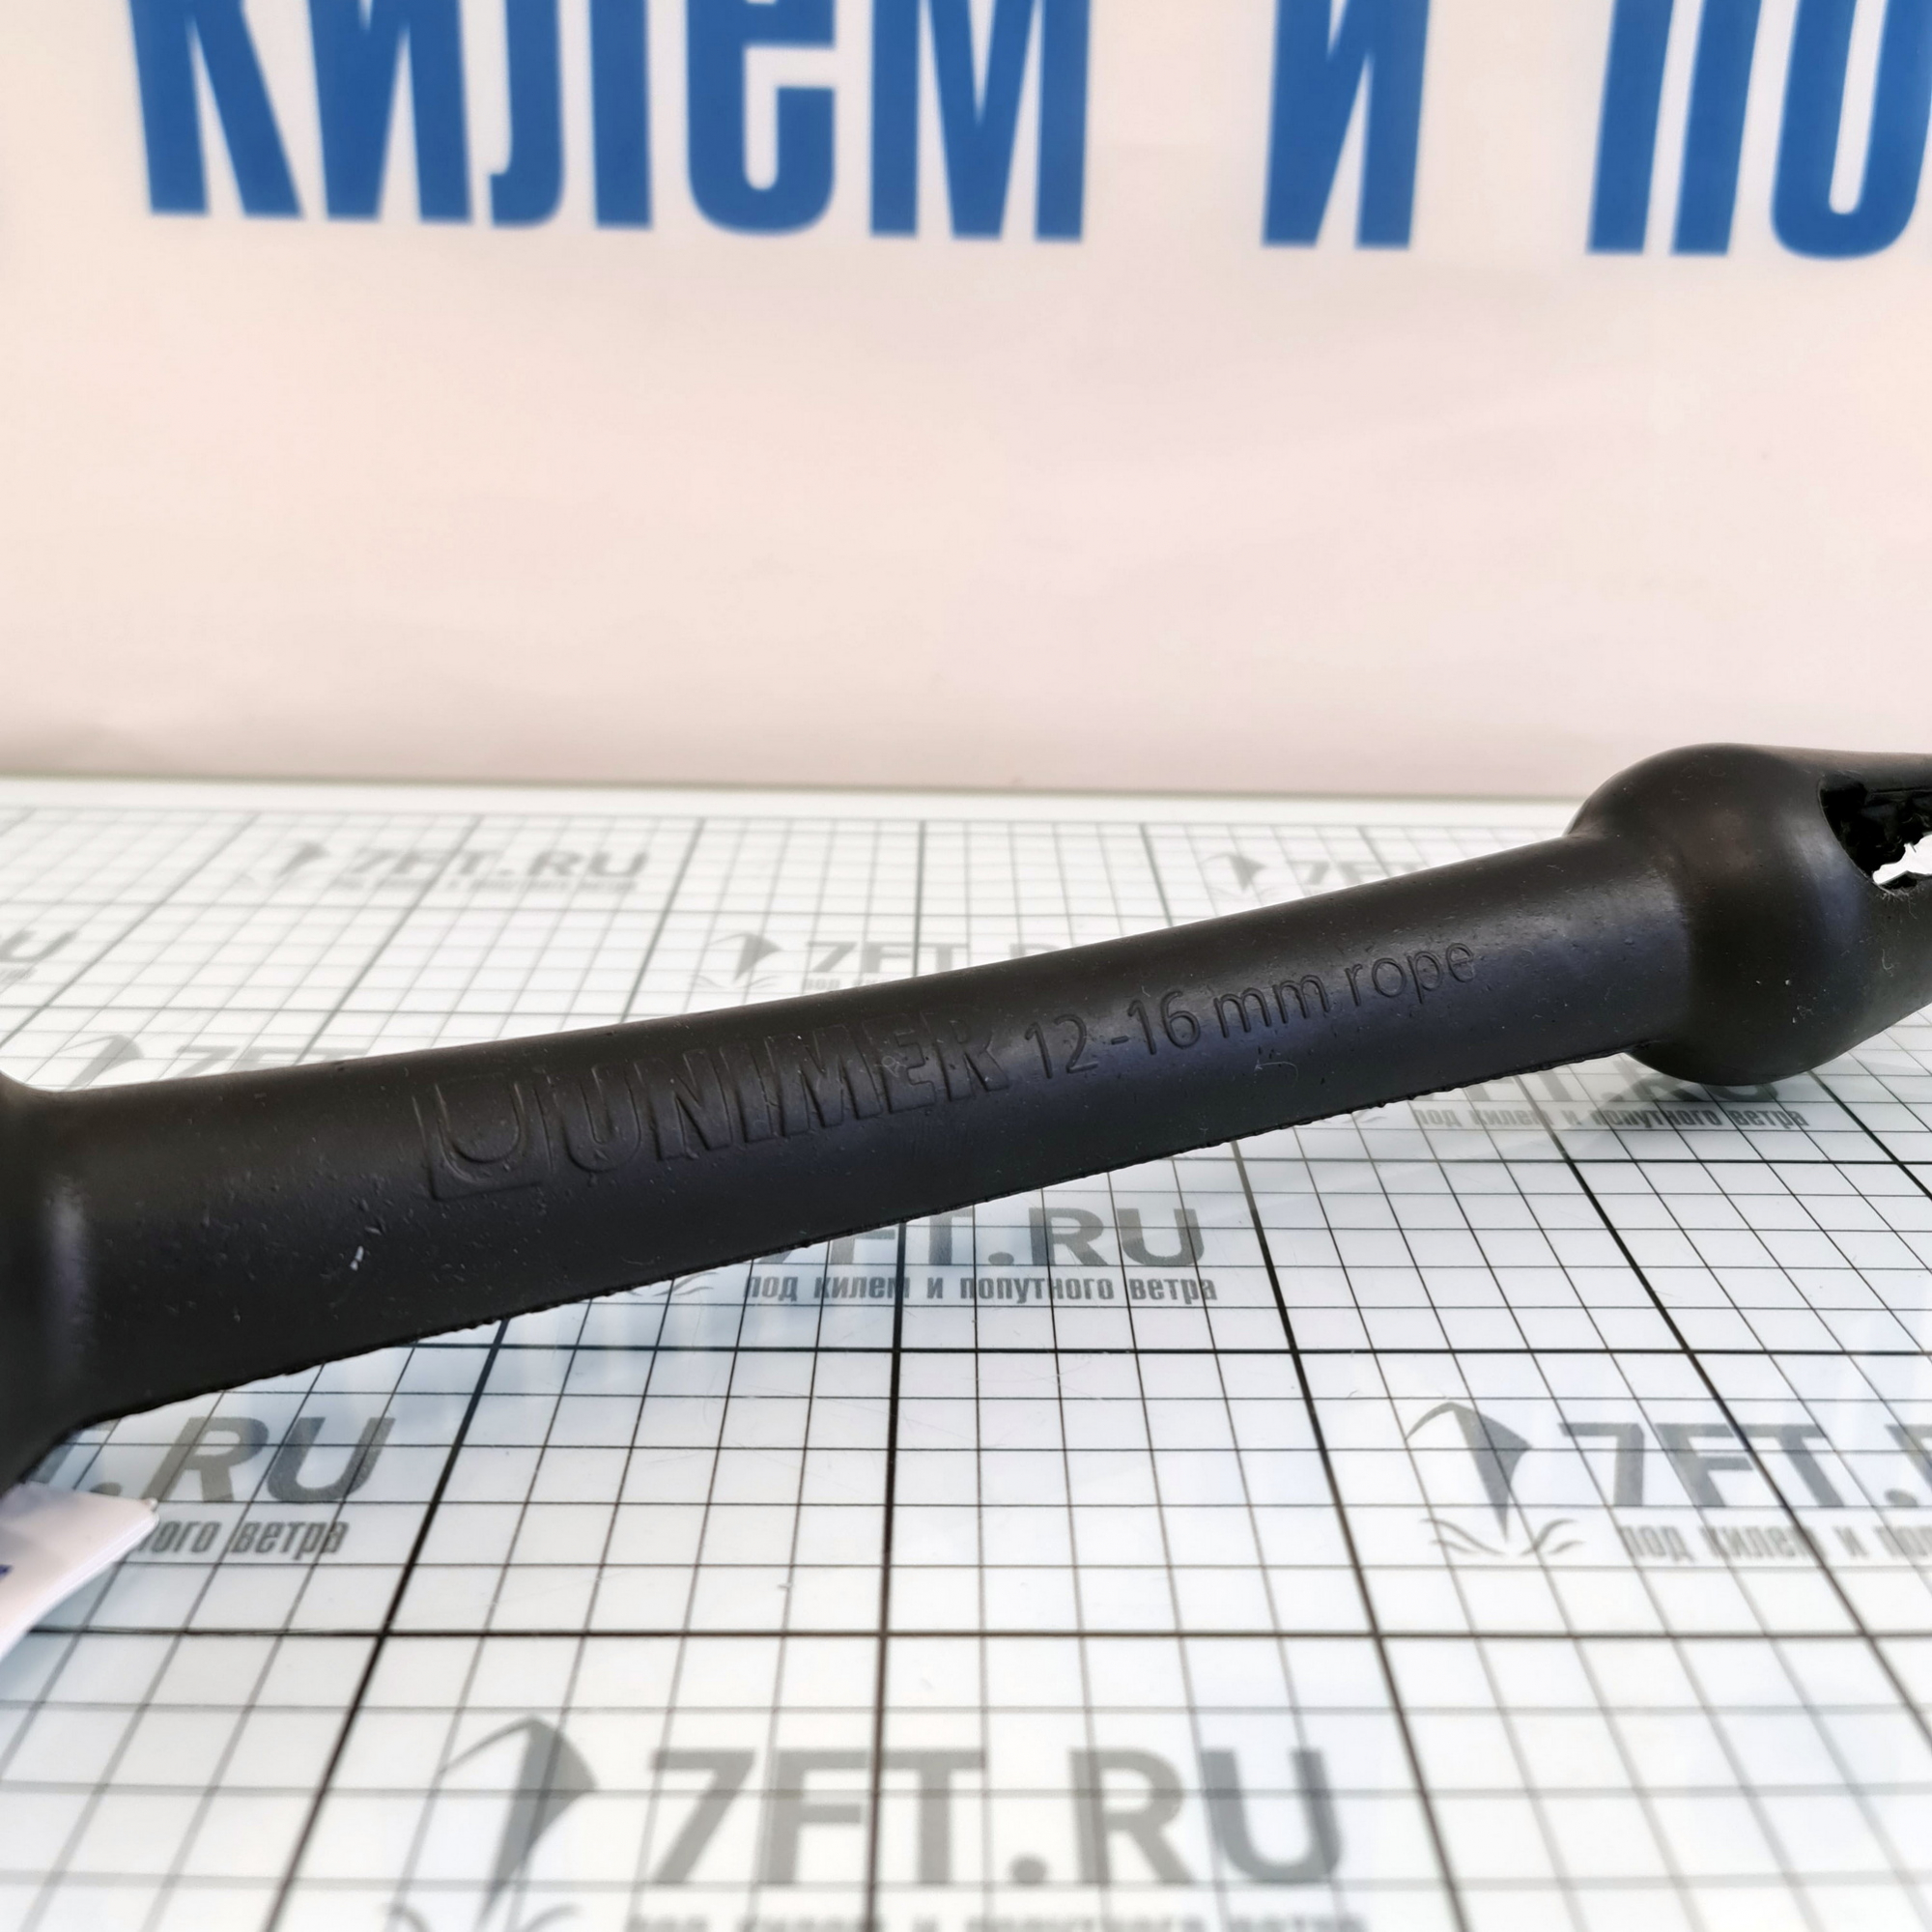 Купить Амортизатор швартовый Unimer Mooring 810620 416мм для троса Ø12-16мм из чёрного полиамида для судна до 8м 7ft.ru в интернет магазине Семь Футов